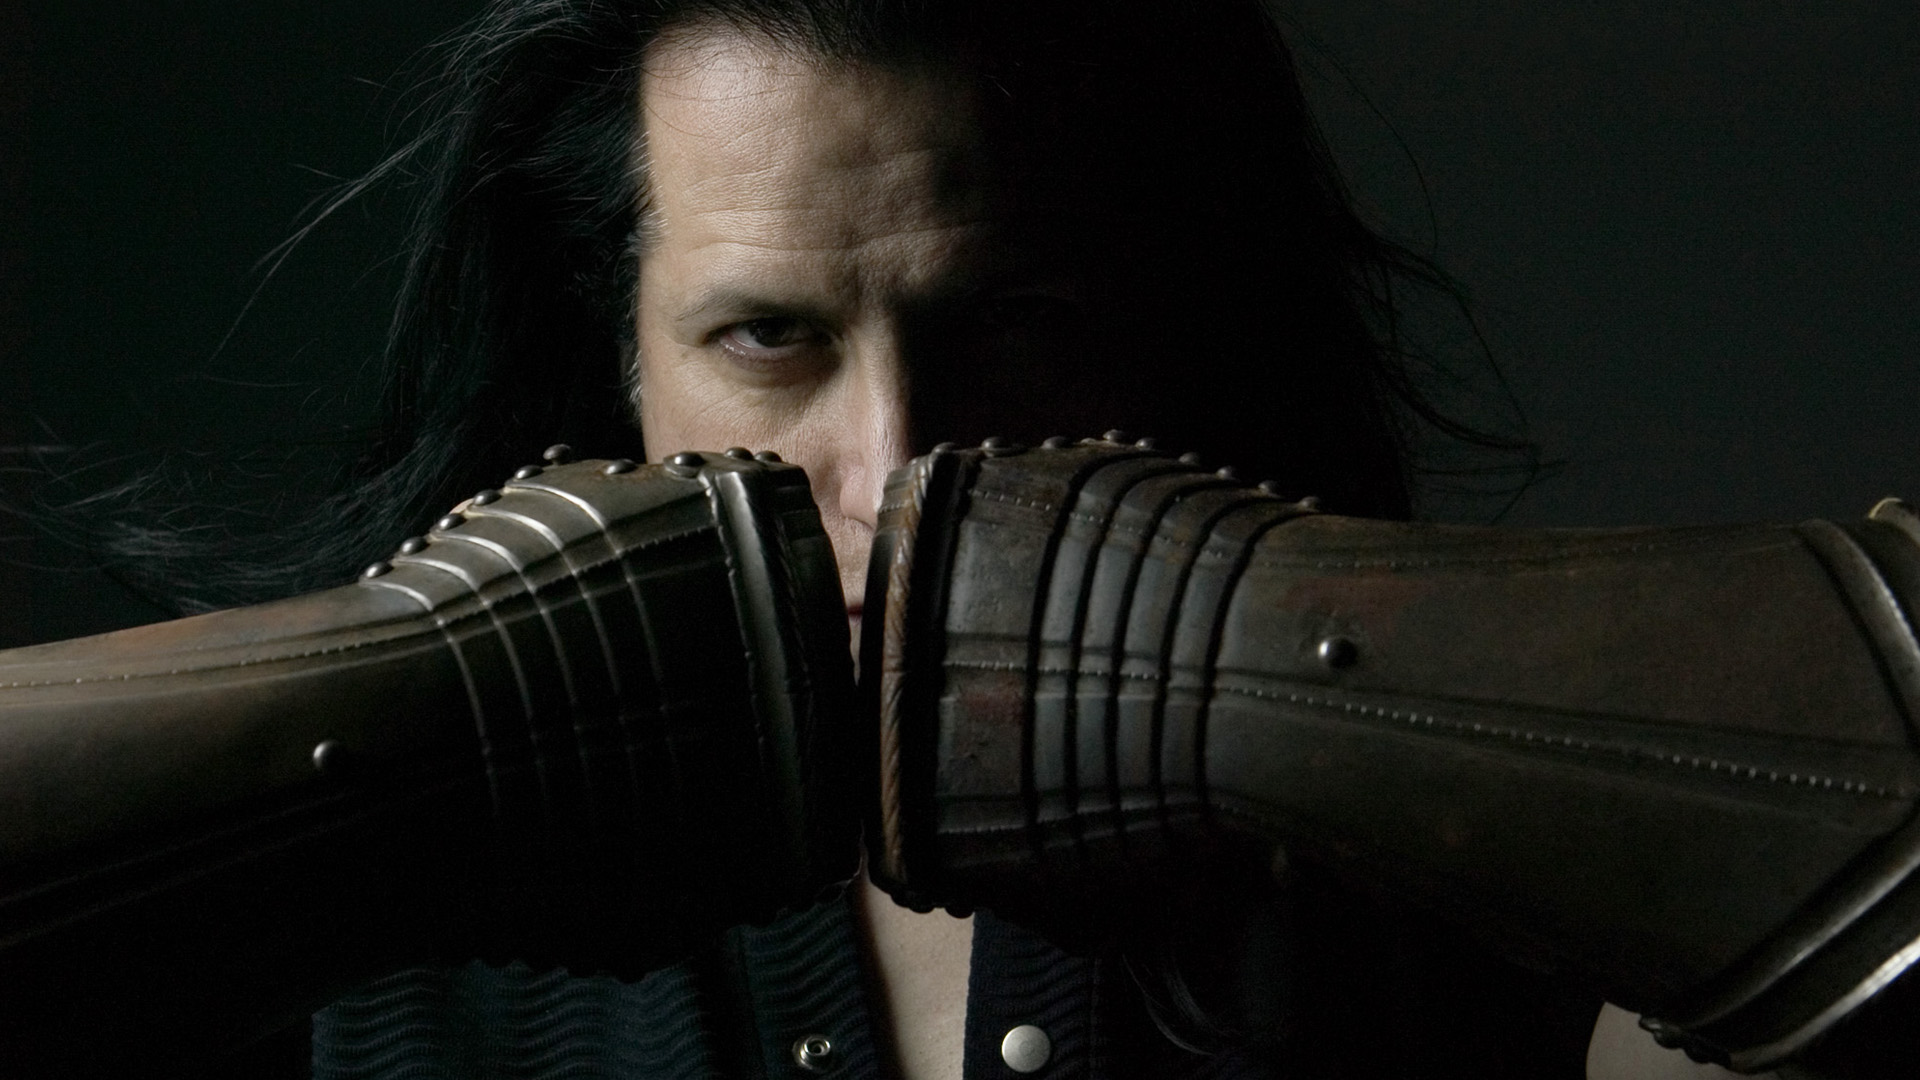 Blood And Tears av Danzig